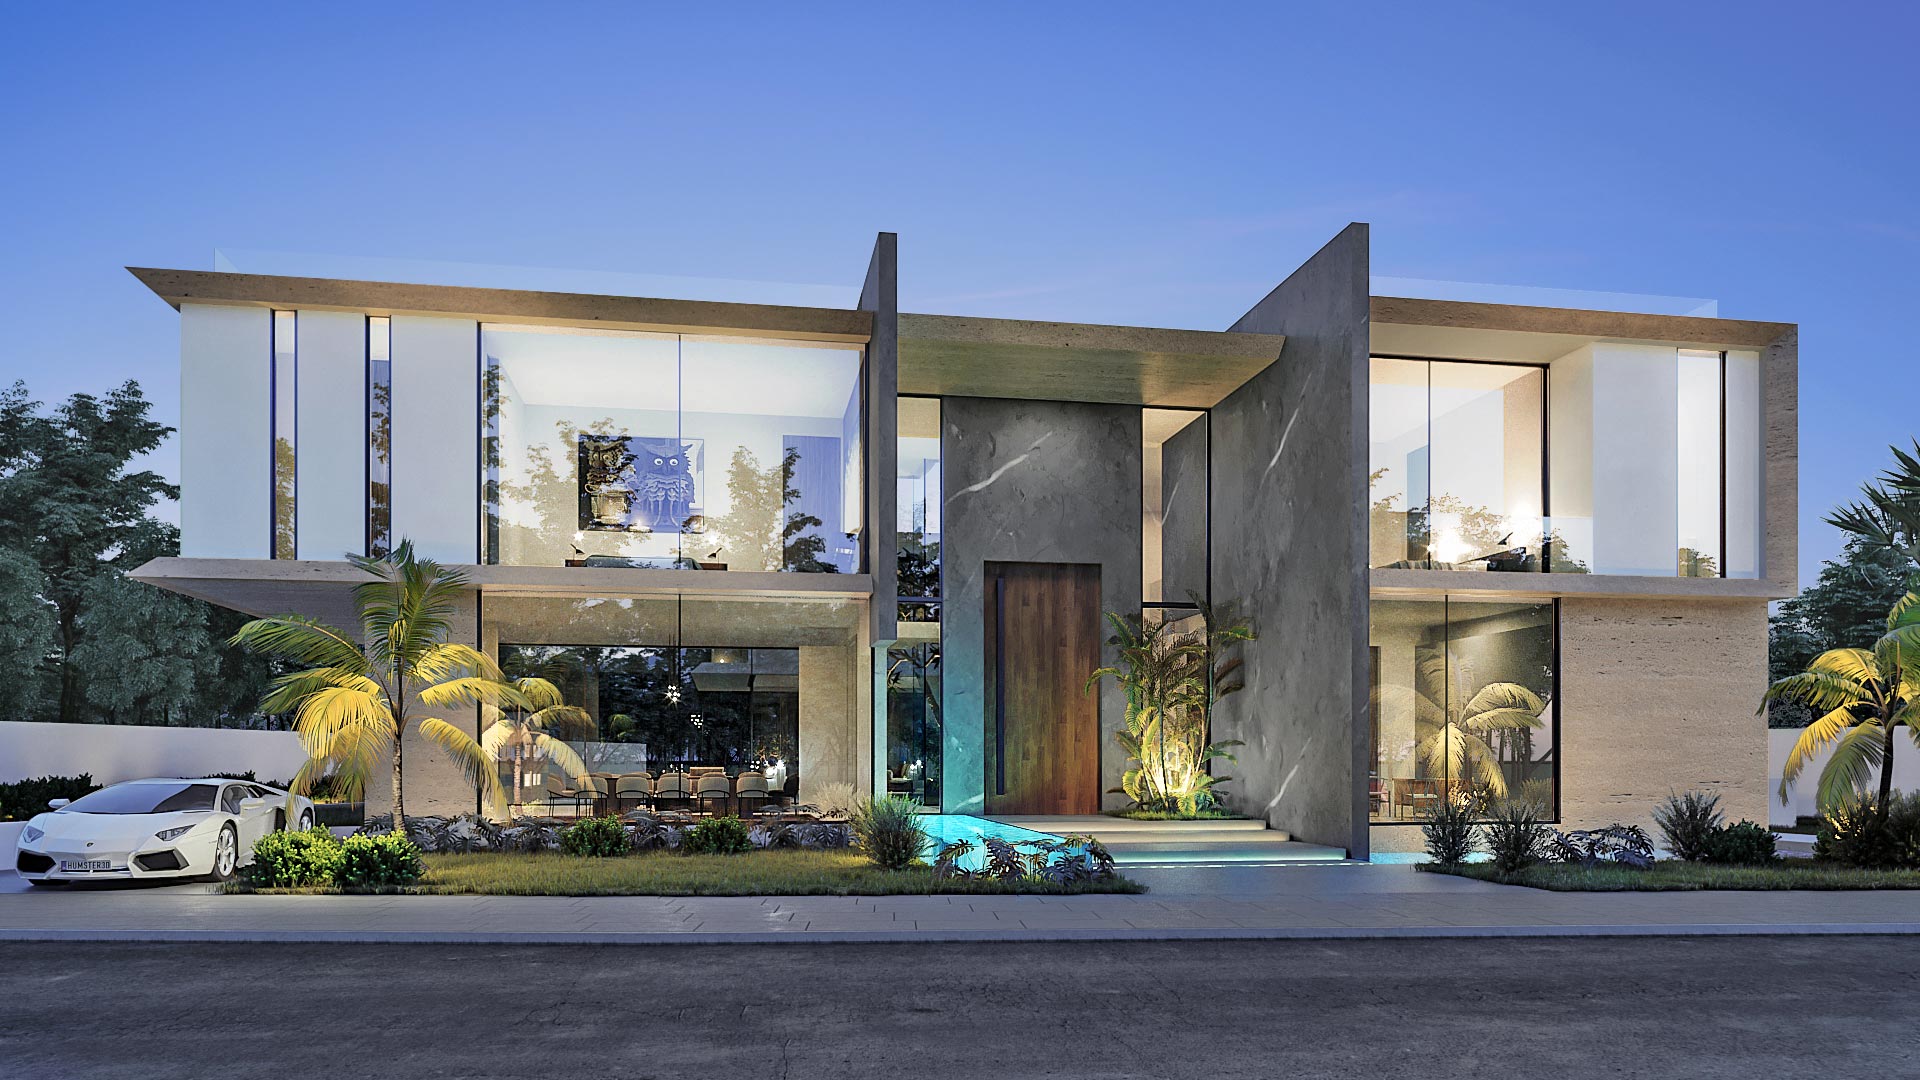 Dubai Hills Villa Architectural Concept Design